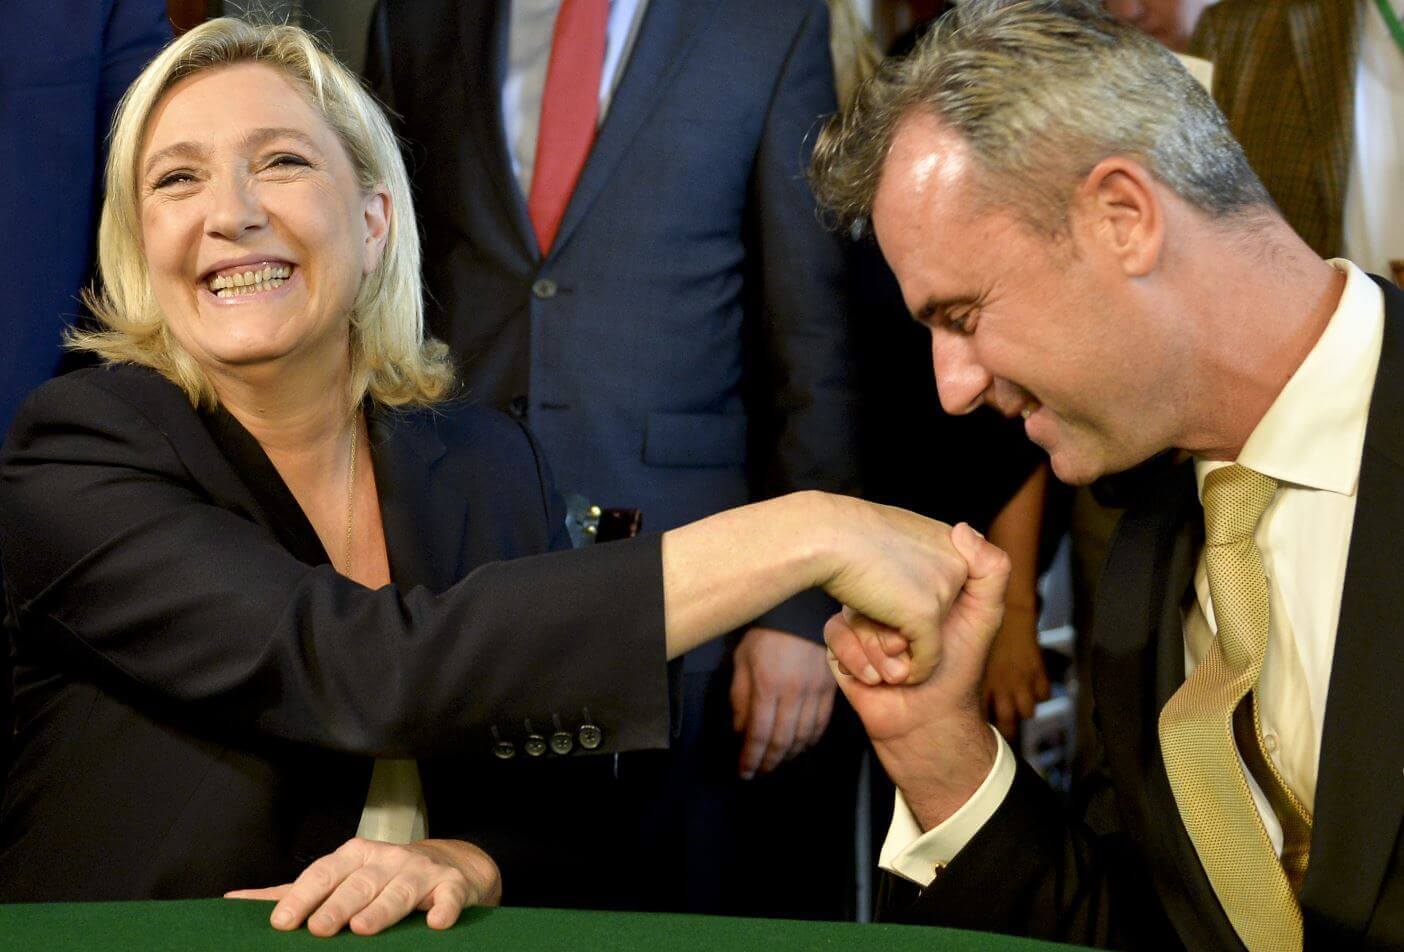 Parteienfinanzierung: Rechtsextreme Partei von Le Pen muss eine Million Steuergeld zurückzahlen